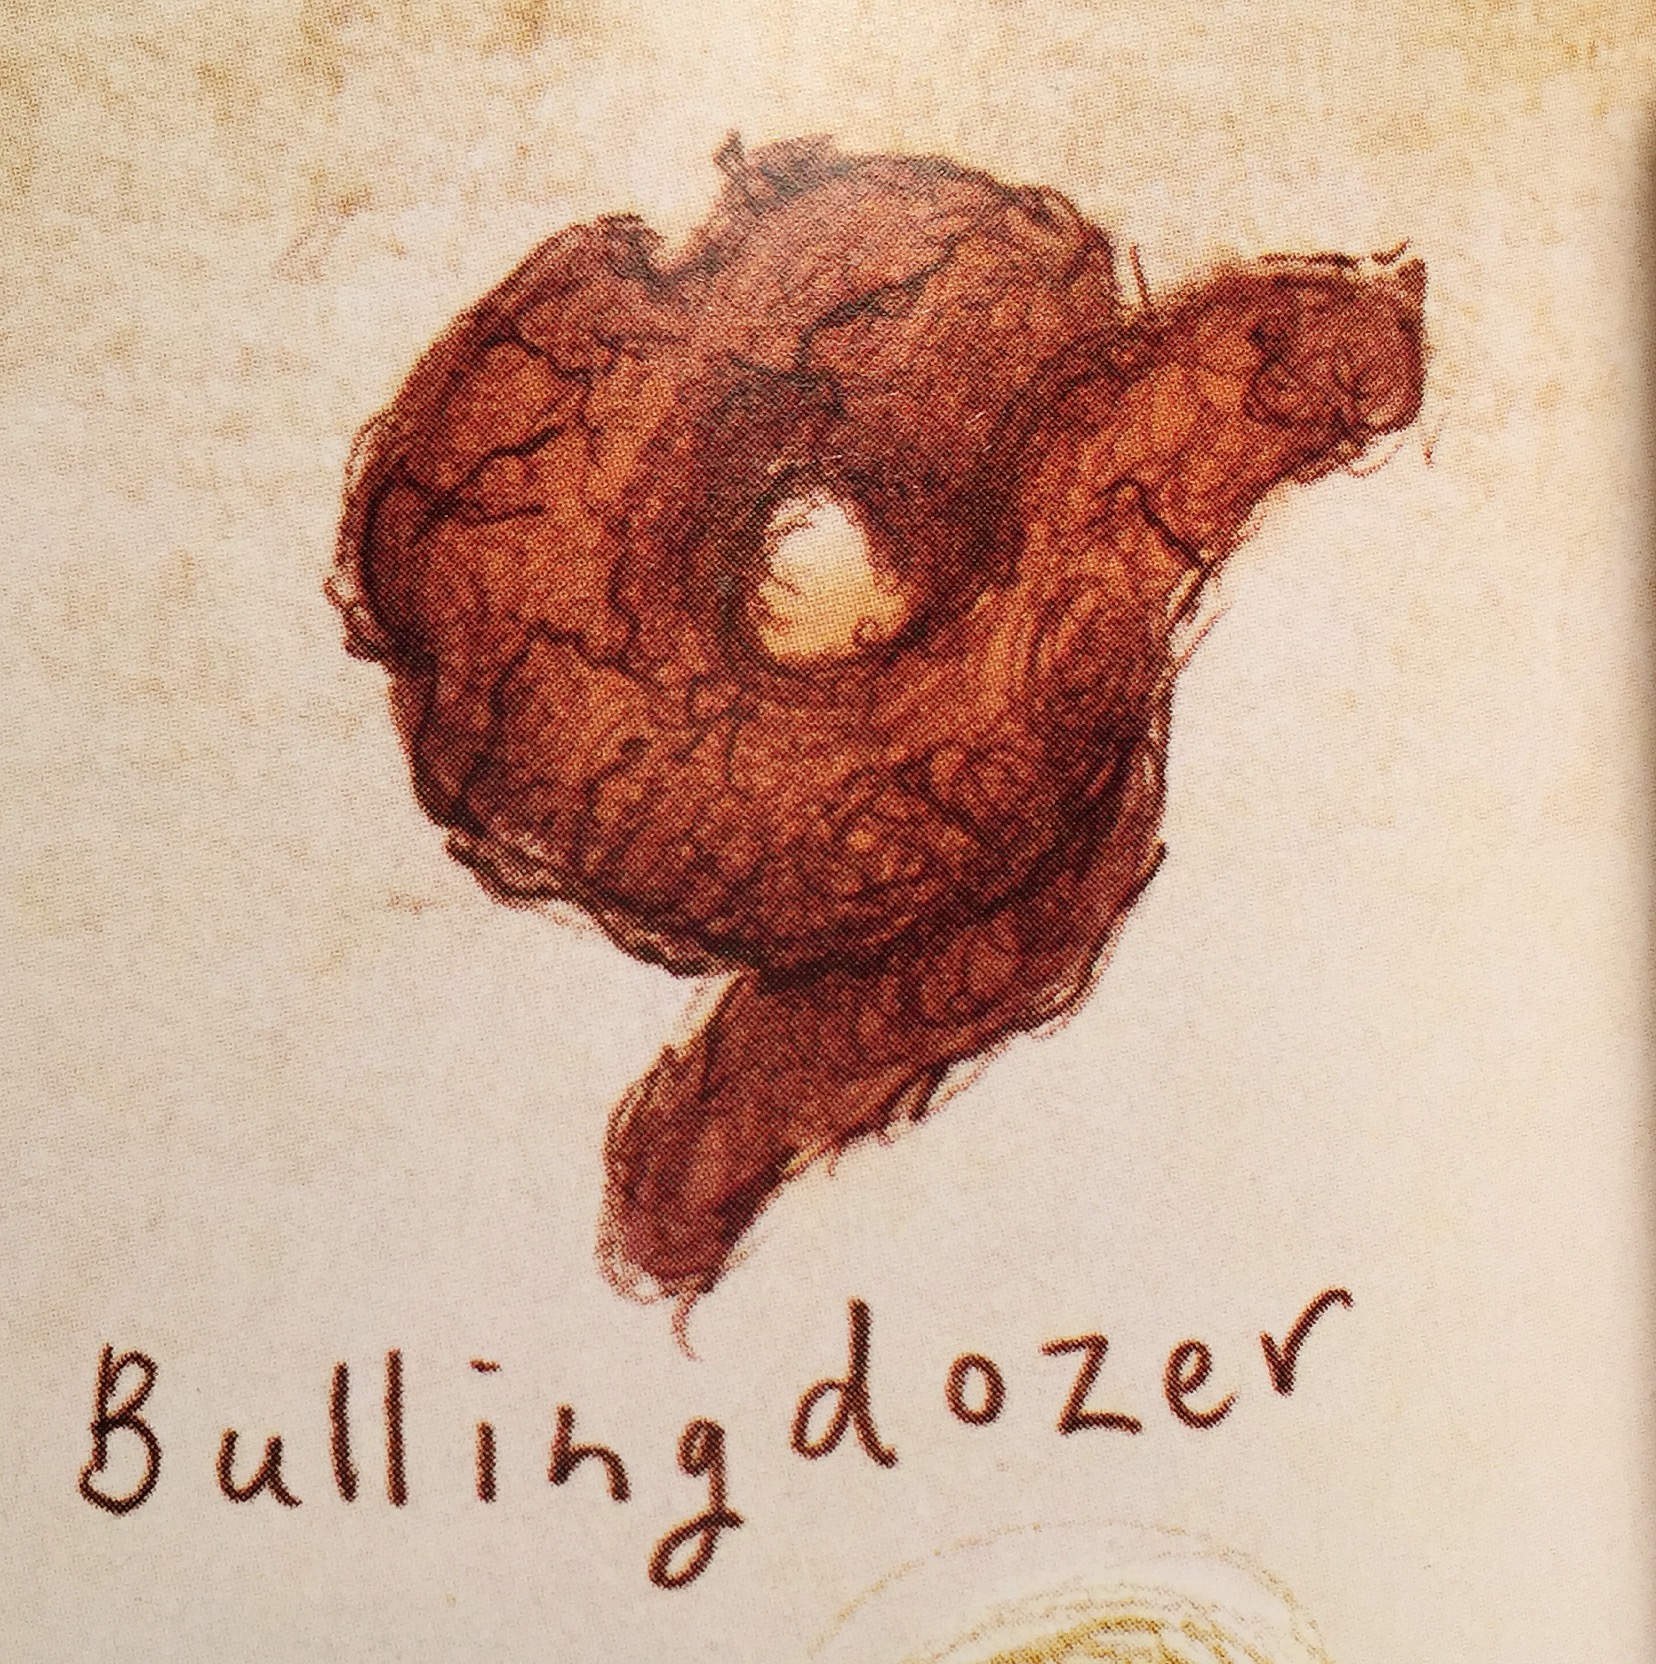 Bullingdozer | How to Train Your Dragon Wiki | Fandom